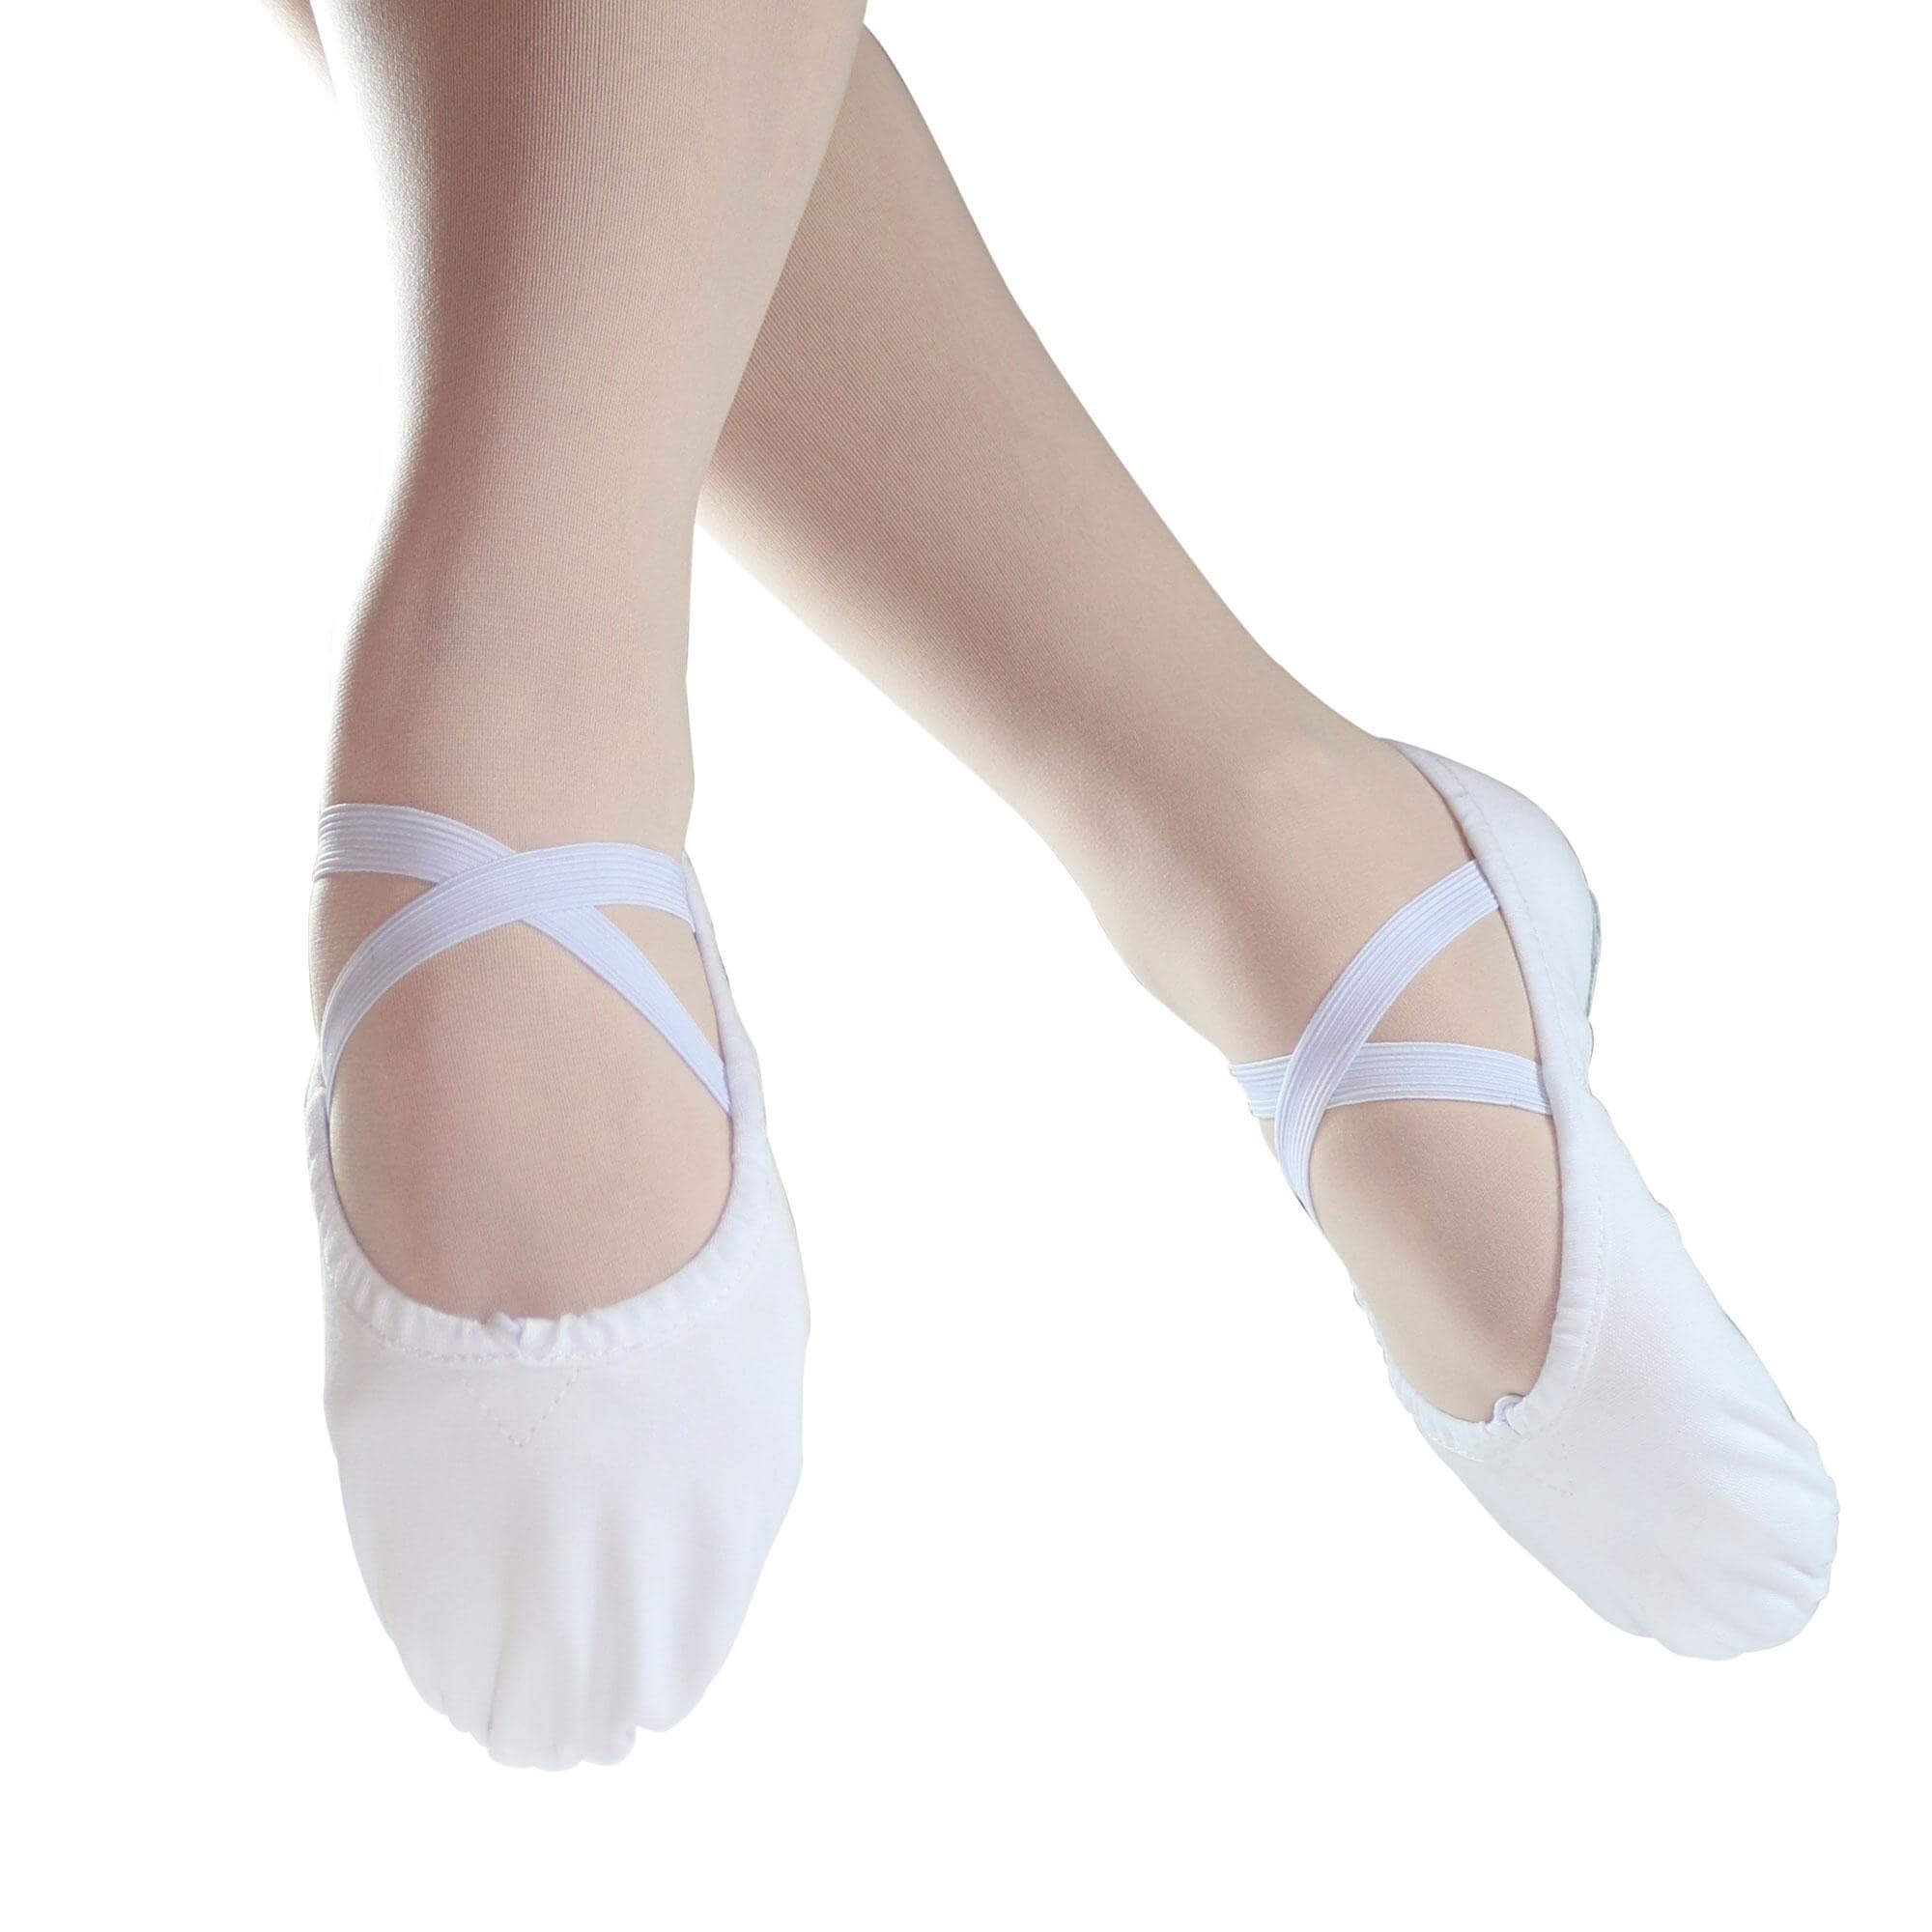 ballet slipper shoes